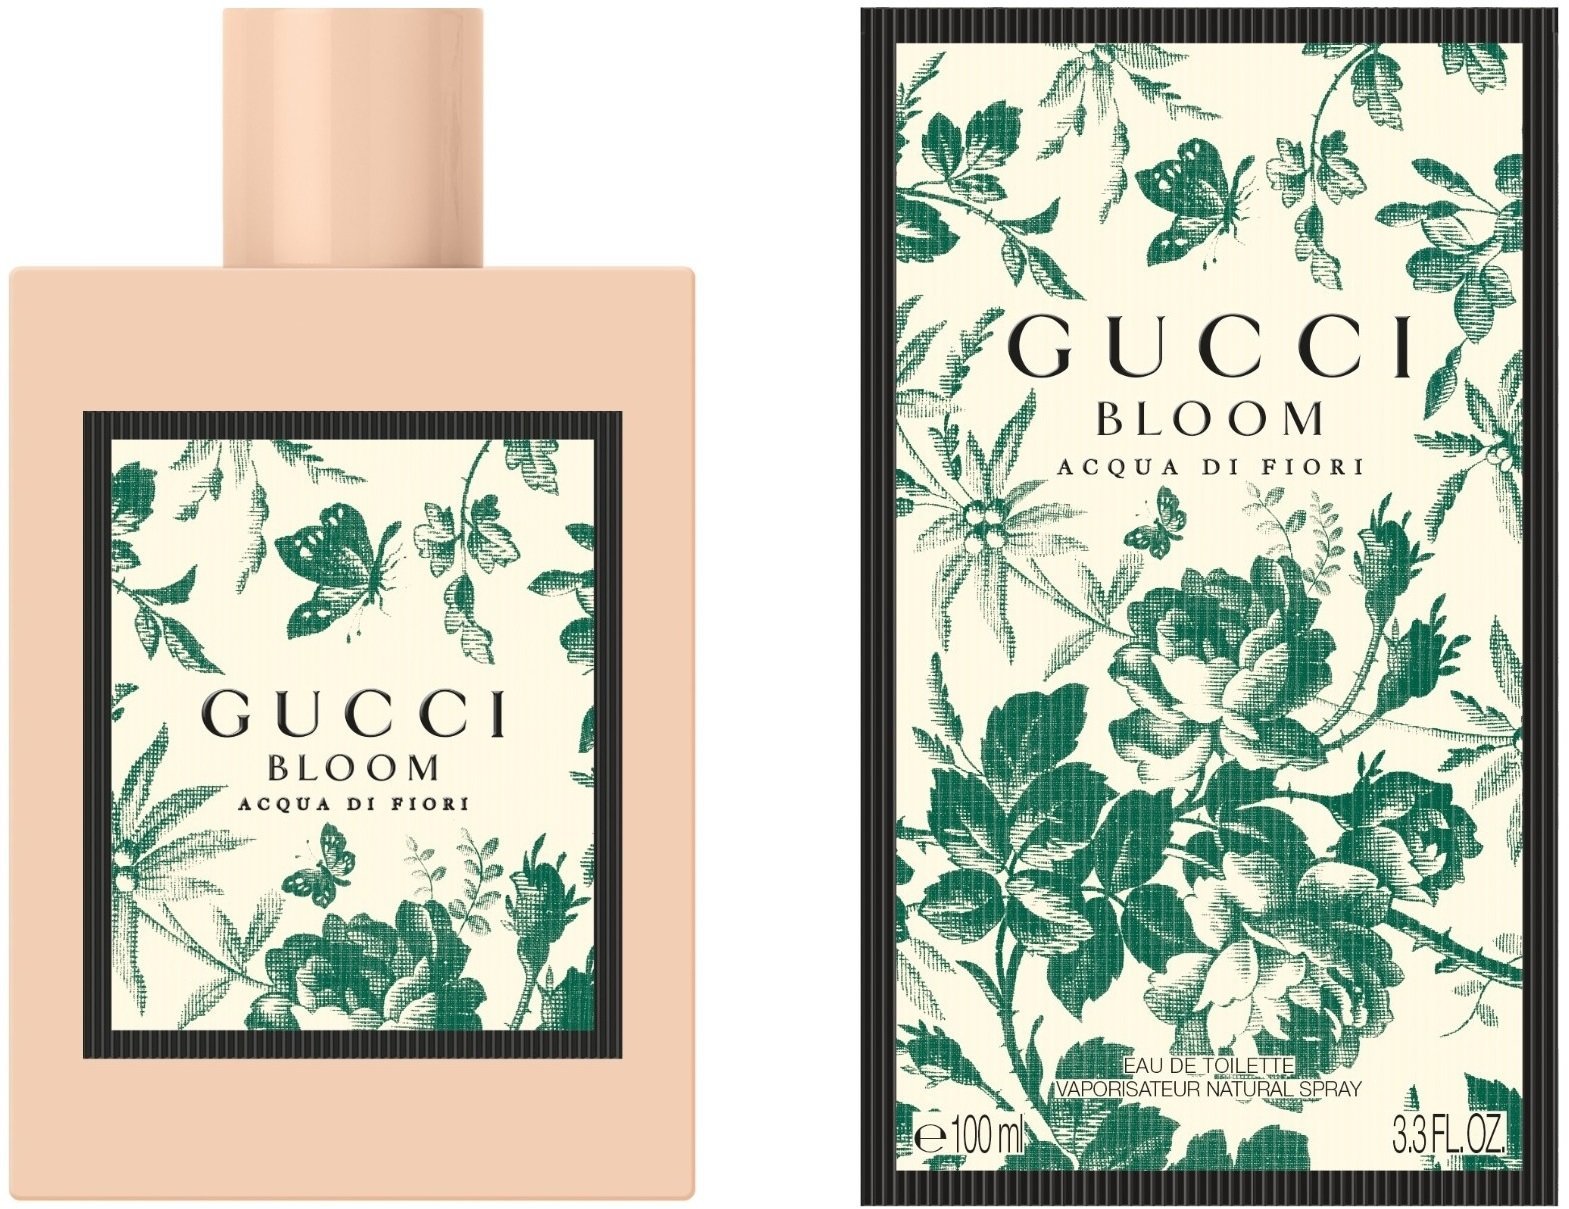 Gucci Bloom Acqua di Fiori EdT 100ml in 